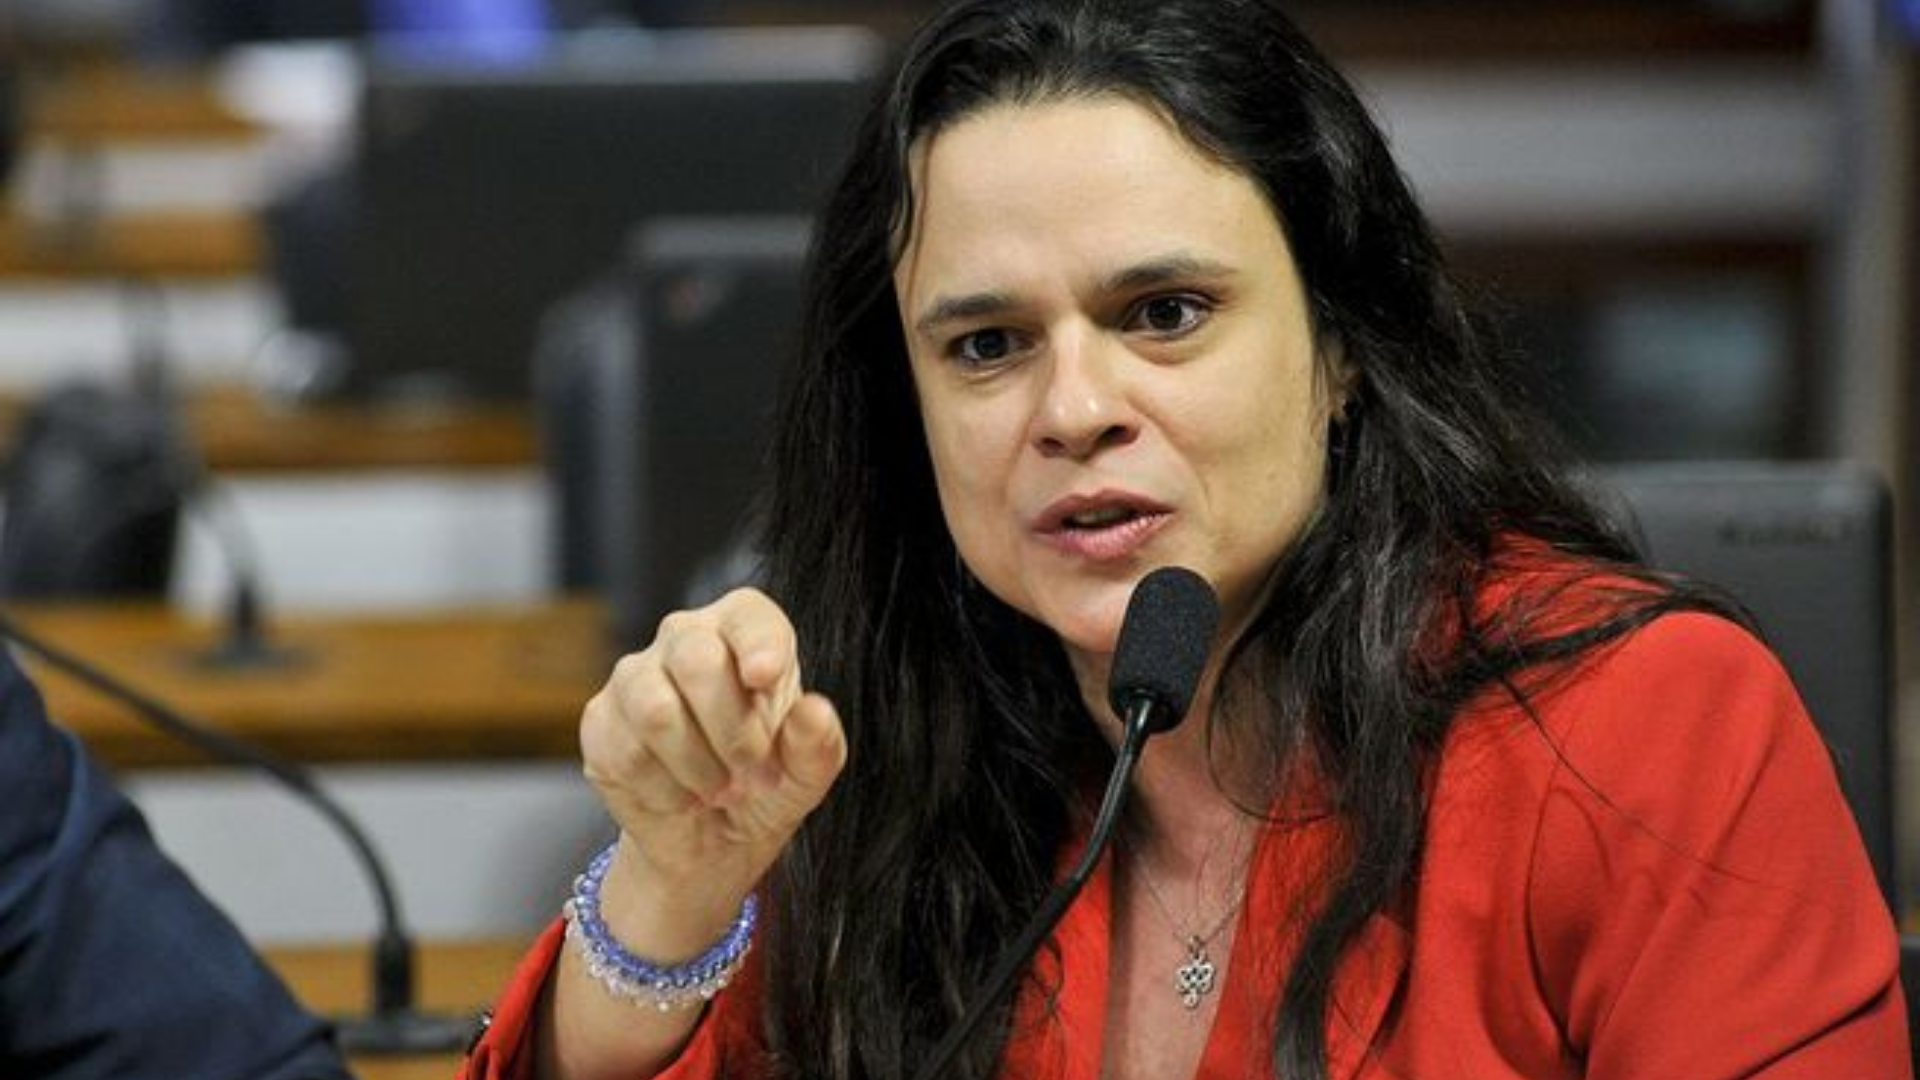 Janaina Paschoal sobre Bolsonaro não apoia-la ao Senado: "Tem medo de mim". Ela tem expressão facial de raiva, está apontando o dedo indicador direito, tem os cabelos soltos e usa um vestido laranja.